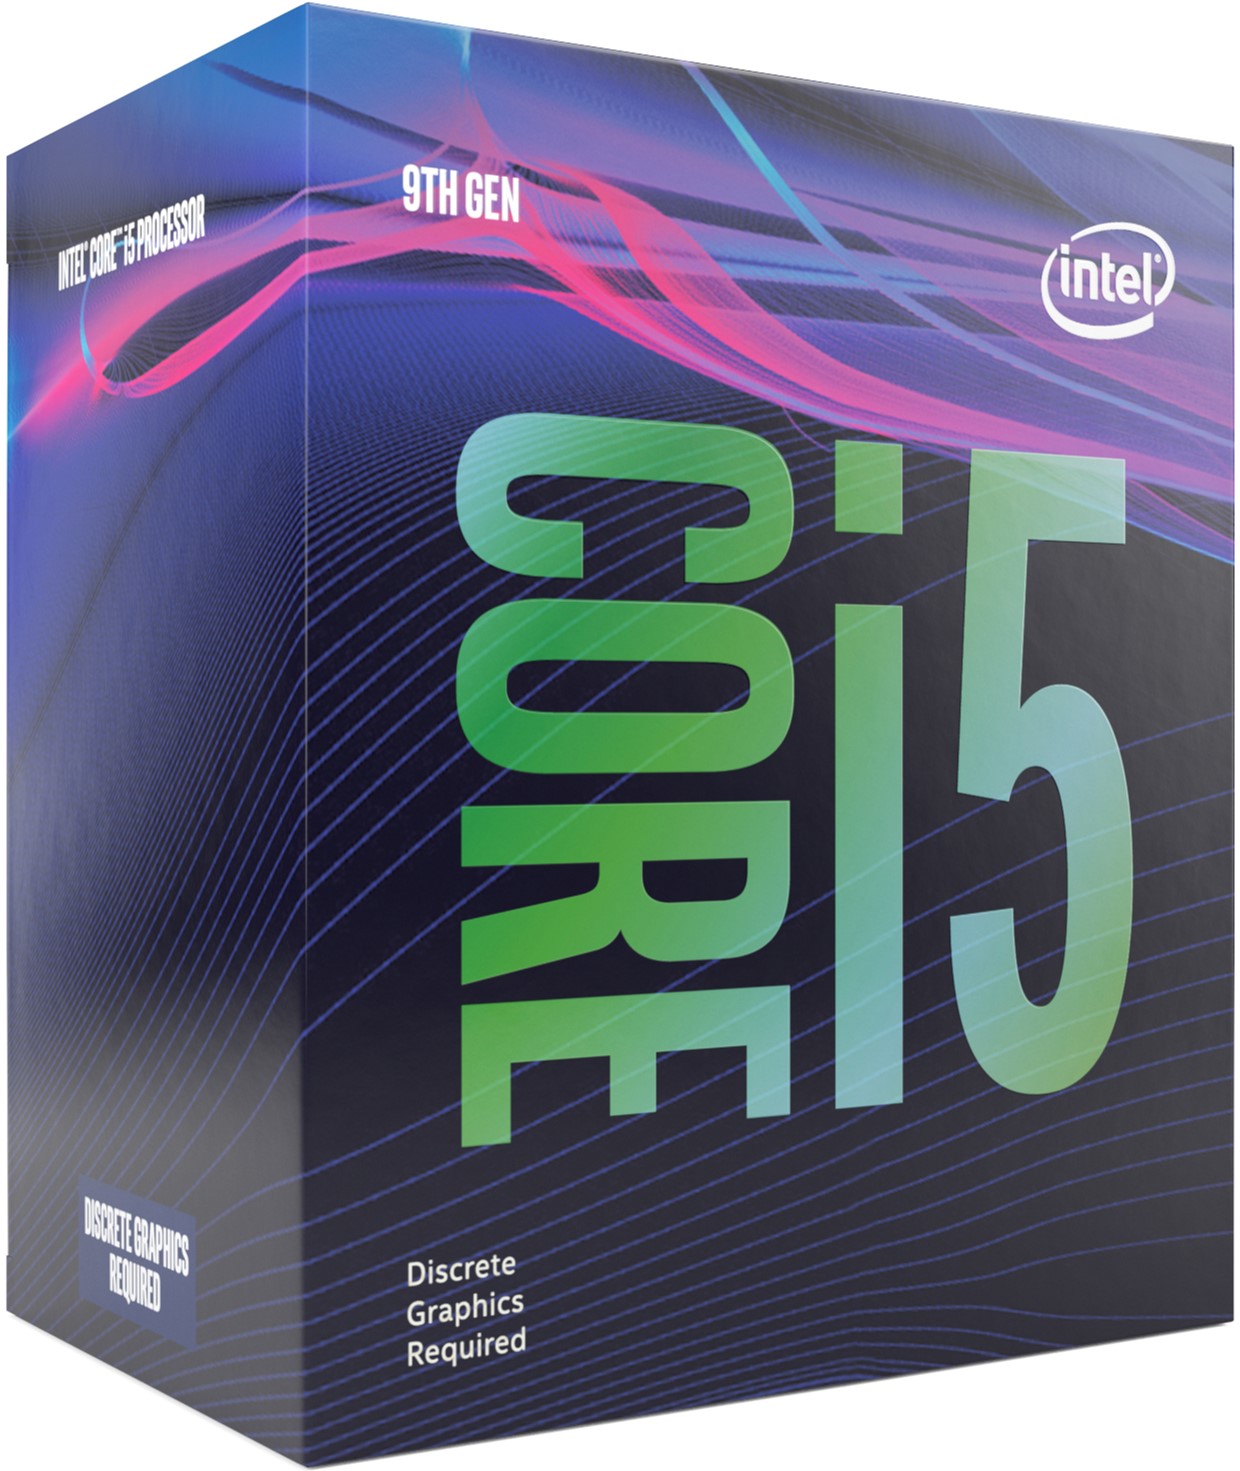 Акция на Процессор Intel Core i5-9500F 3.0GHz/8GT/s/9MB (BX80684I59500F) s1151 BOX от Rozetka UA